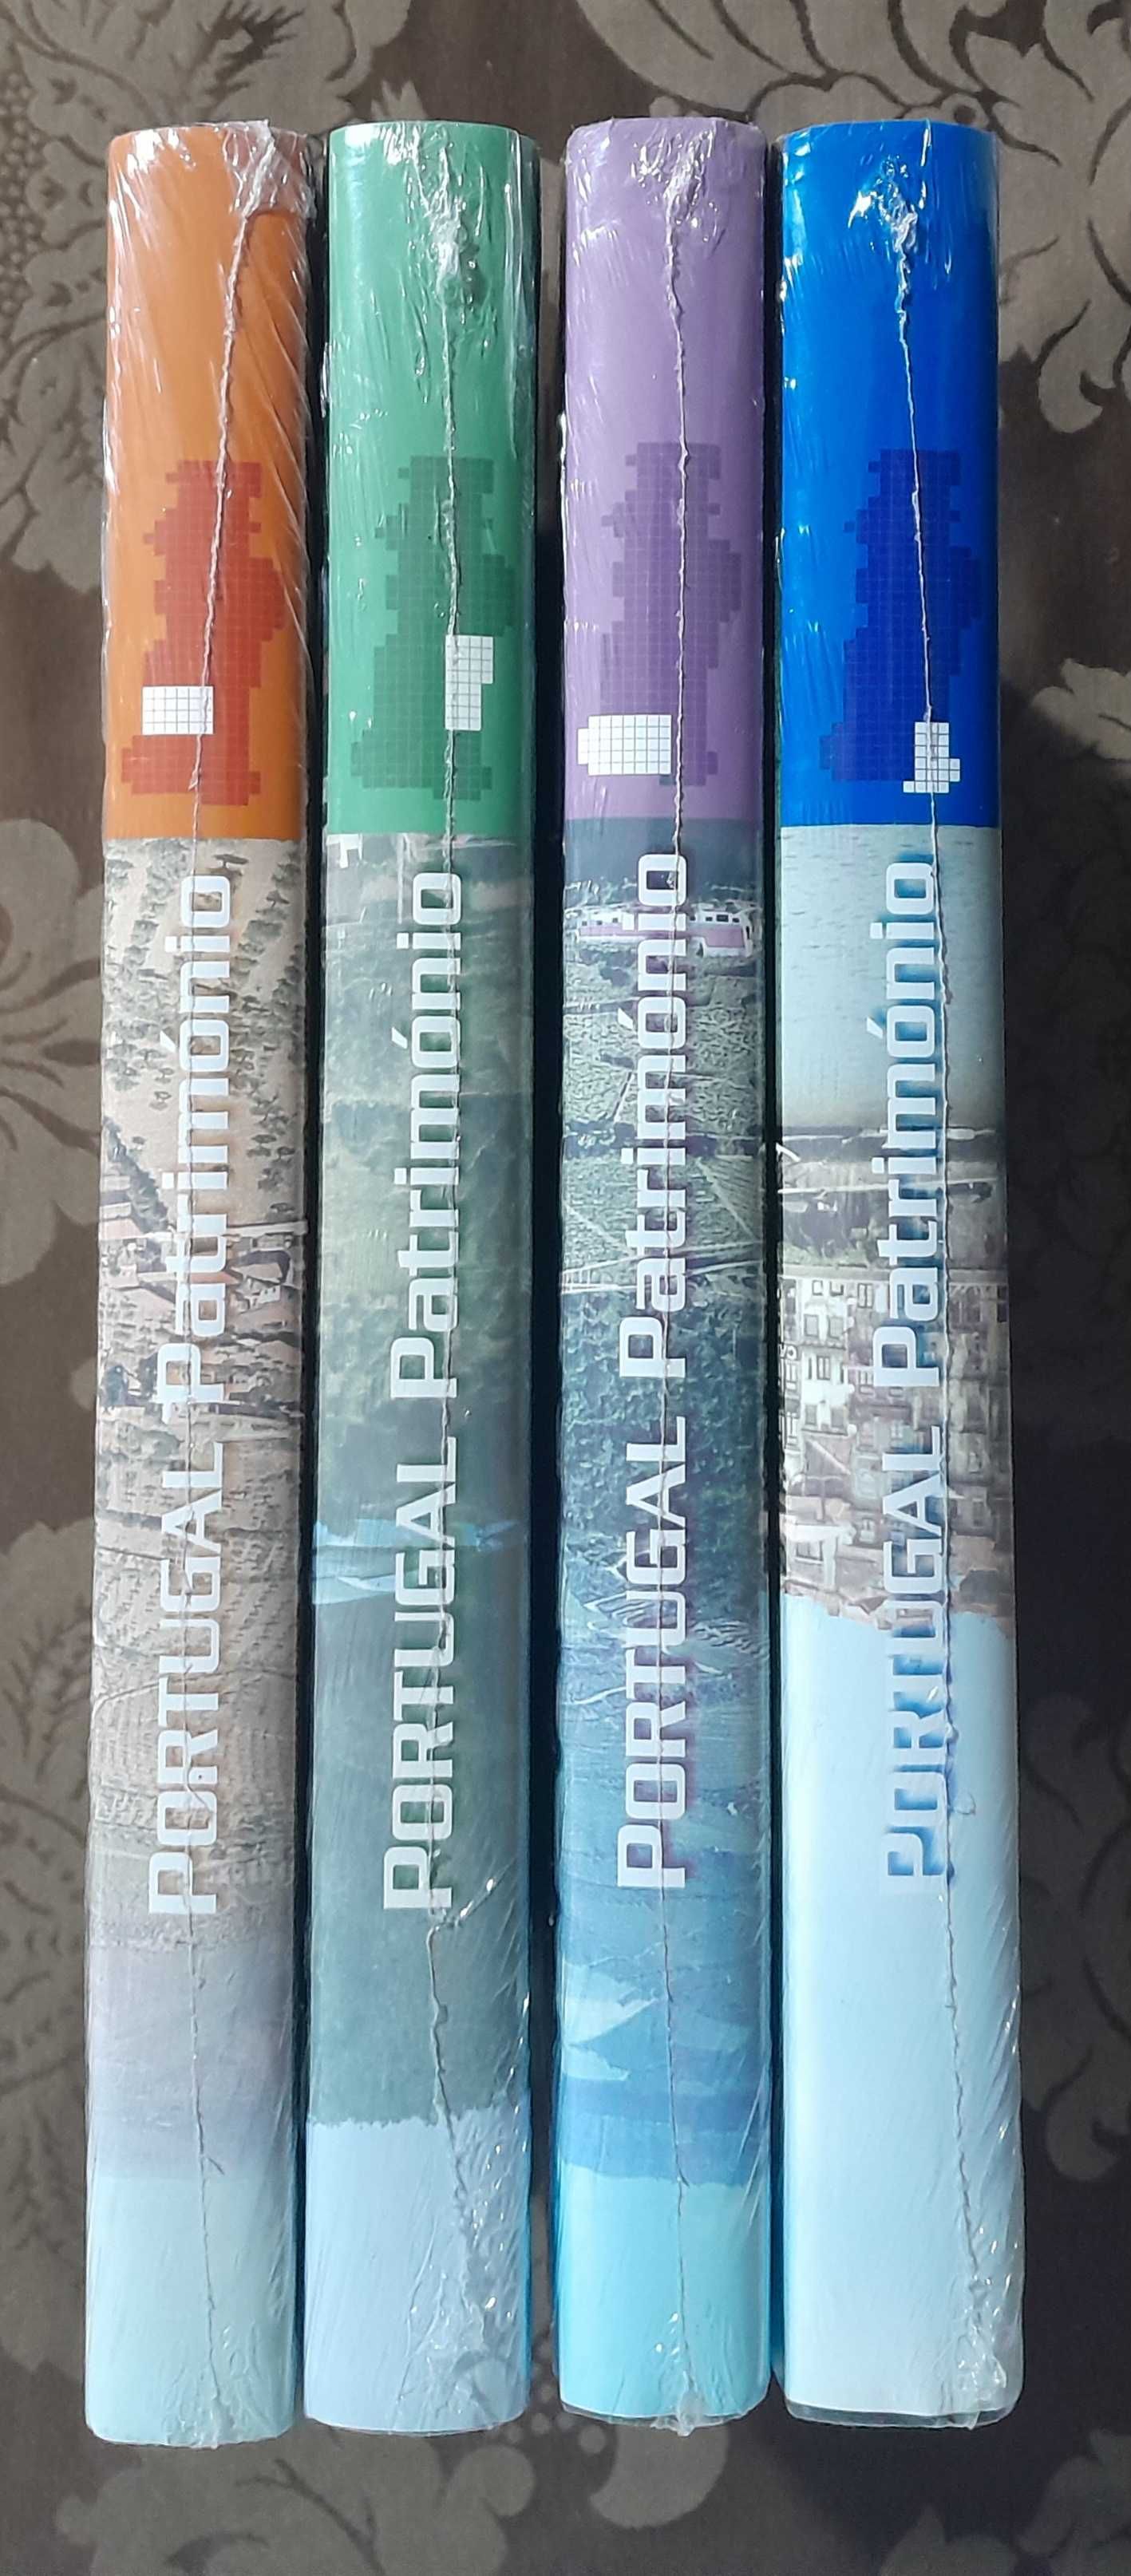 Portugal Património - 3 volumes - Círculo Leitores - José Mattoso